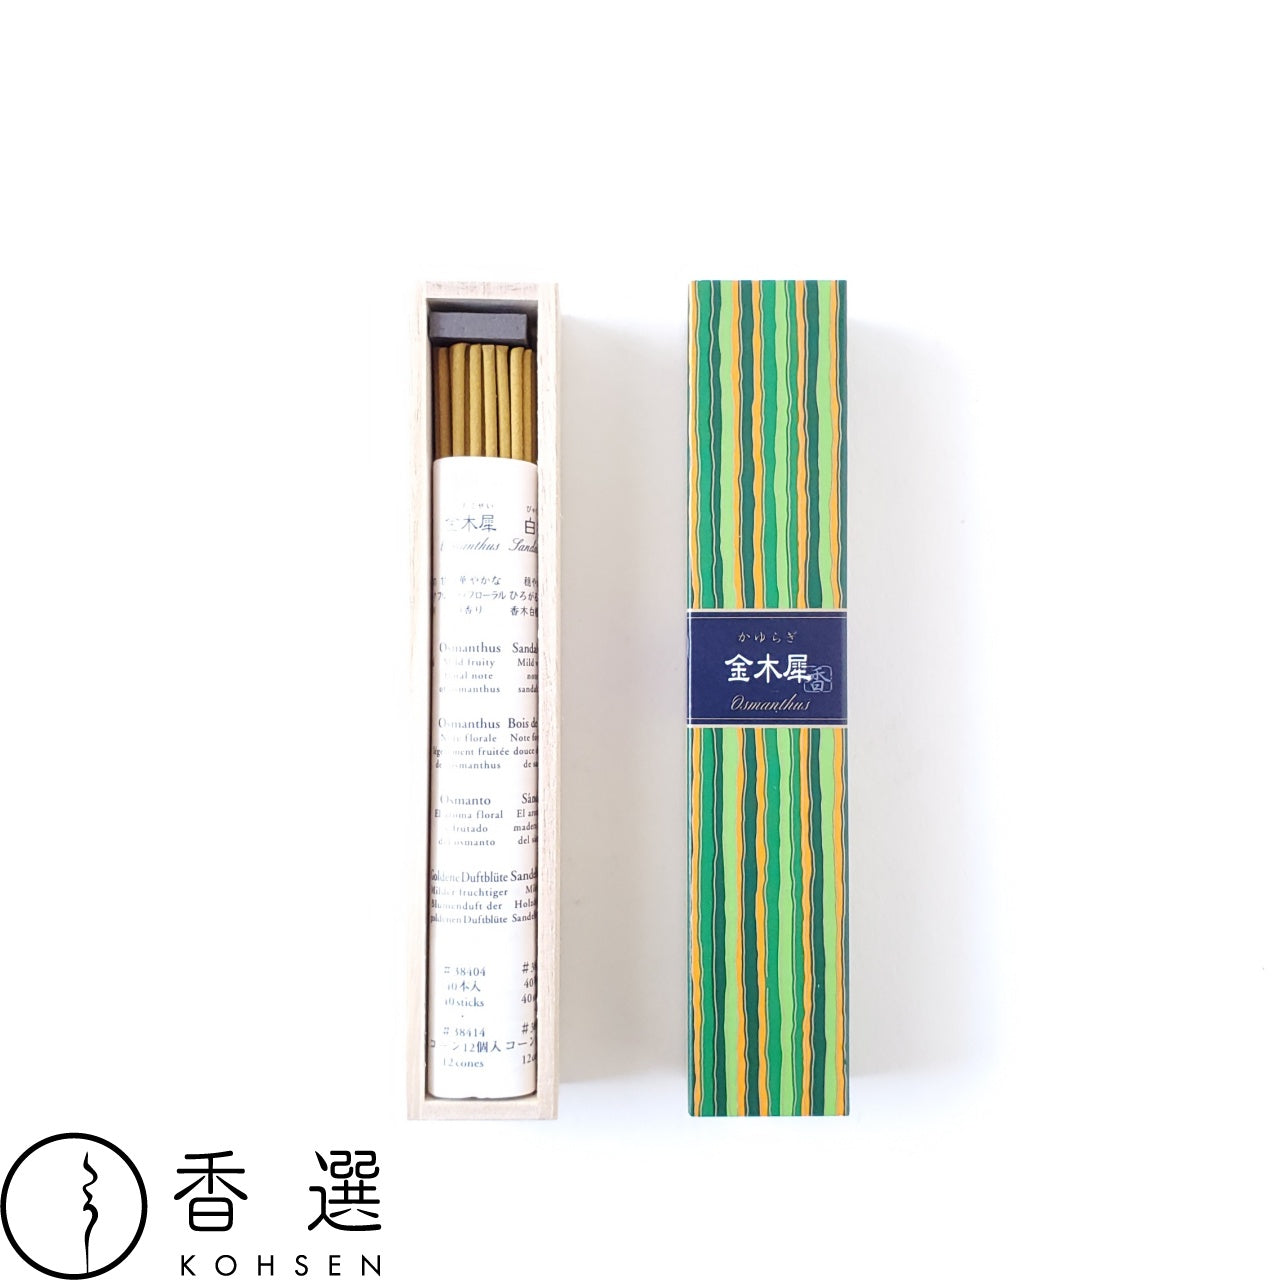 日本香堂 かゆらぎ  金木犀 osmanthus きんもくせい お香 お線香 インセンス スティック型 incense 日本製 アロマ メール便送料無料